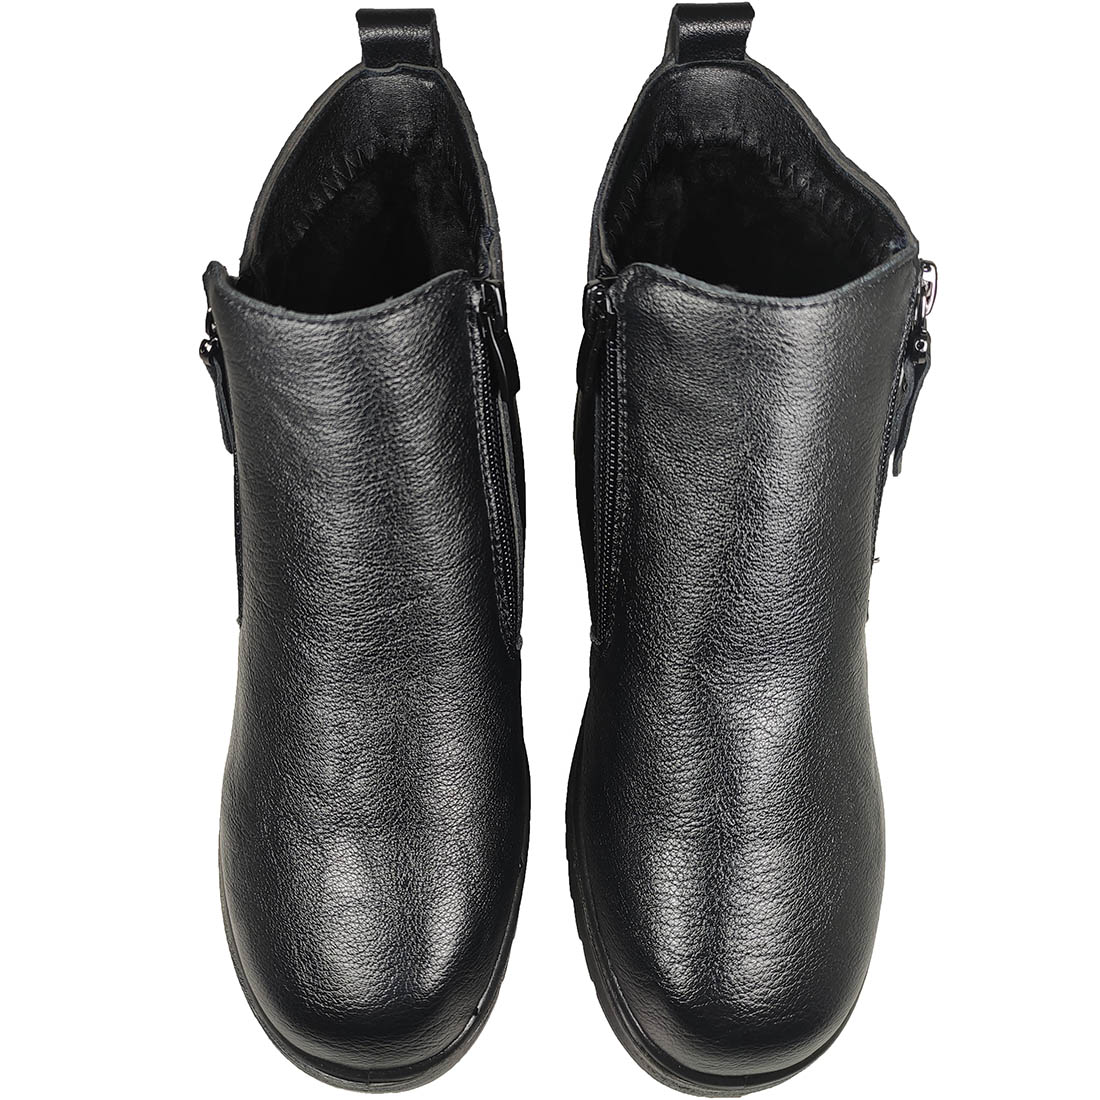 Womens Boots Mira & Max 9882 Black